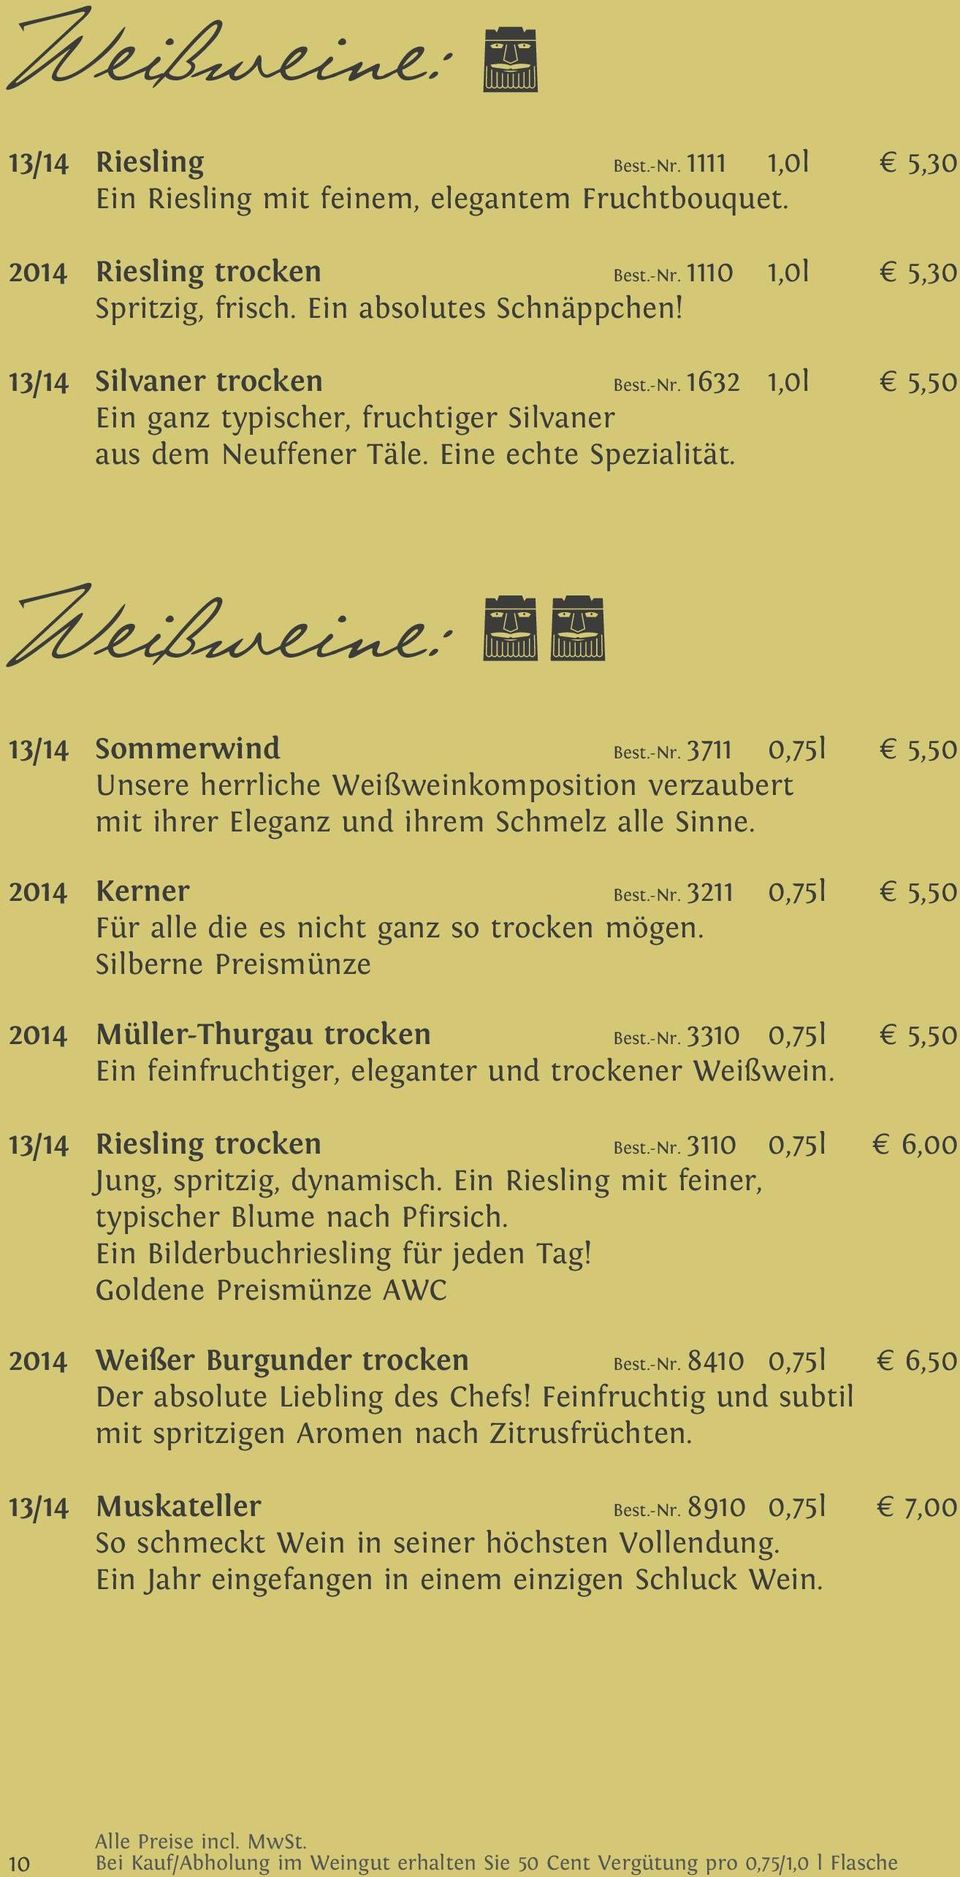 2014 Kerner Best.-Nr. 3211 0,75l 5,50 Für alle die es nicht ganz so trocken mögen. Silberne Preismünze 2014 Müller-Thurgau trocken Best.-Nr. 3310 0,75l 5,50 Ein feinfruchtiger, eleganter und trockener Weißwein.